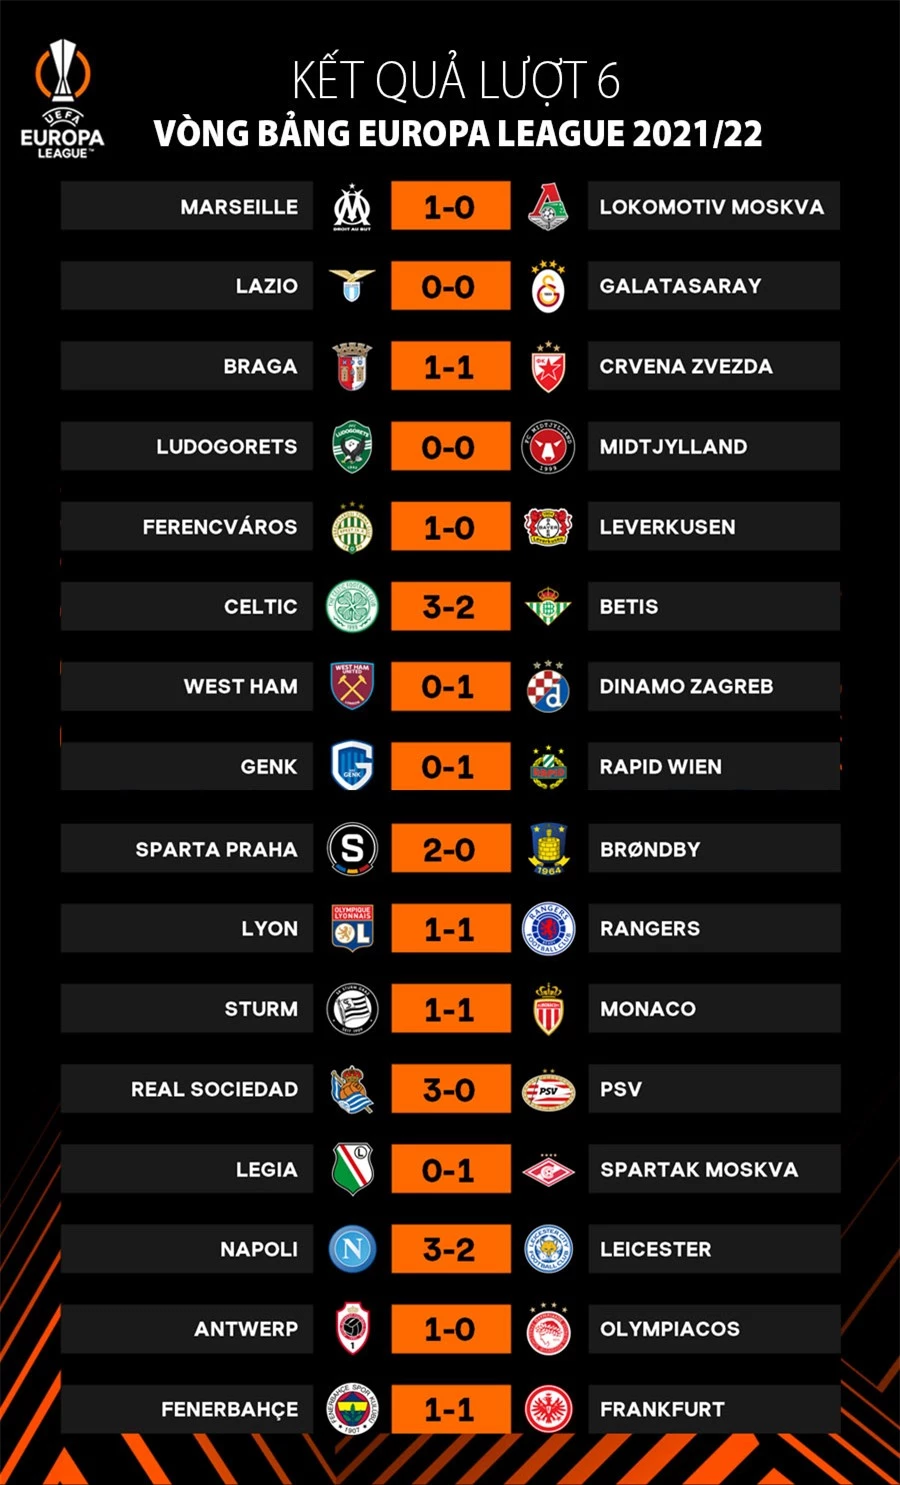 Kết quả lượt 6 vòng bảng Europa League